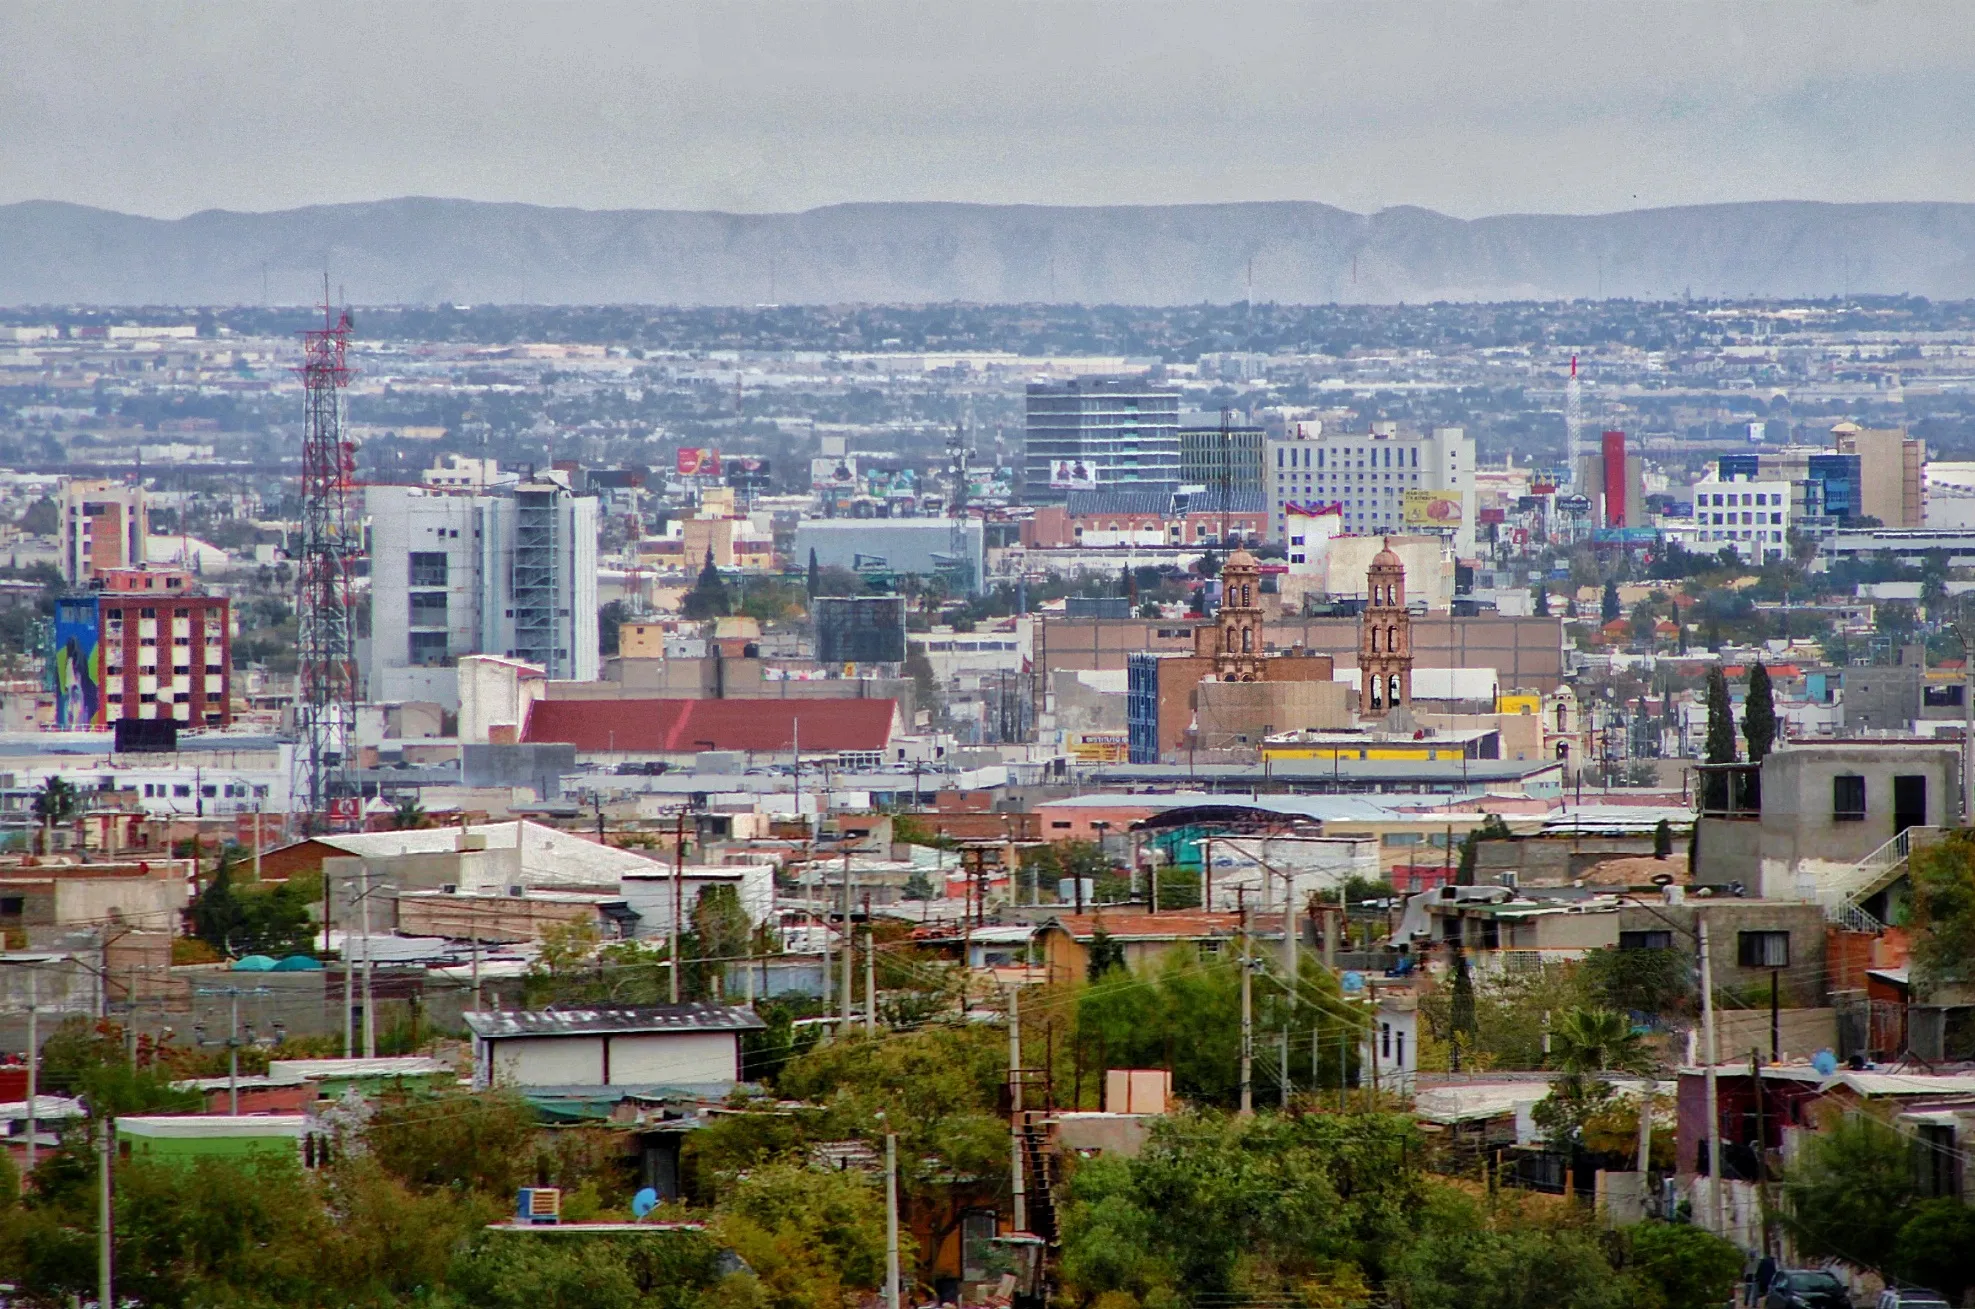 Nota sobre Ciudad Juarez, Chihuahua, para visitar o para residir alli